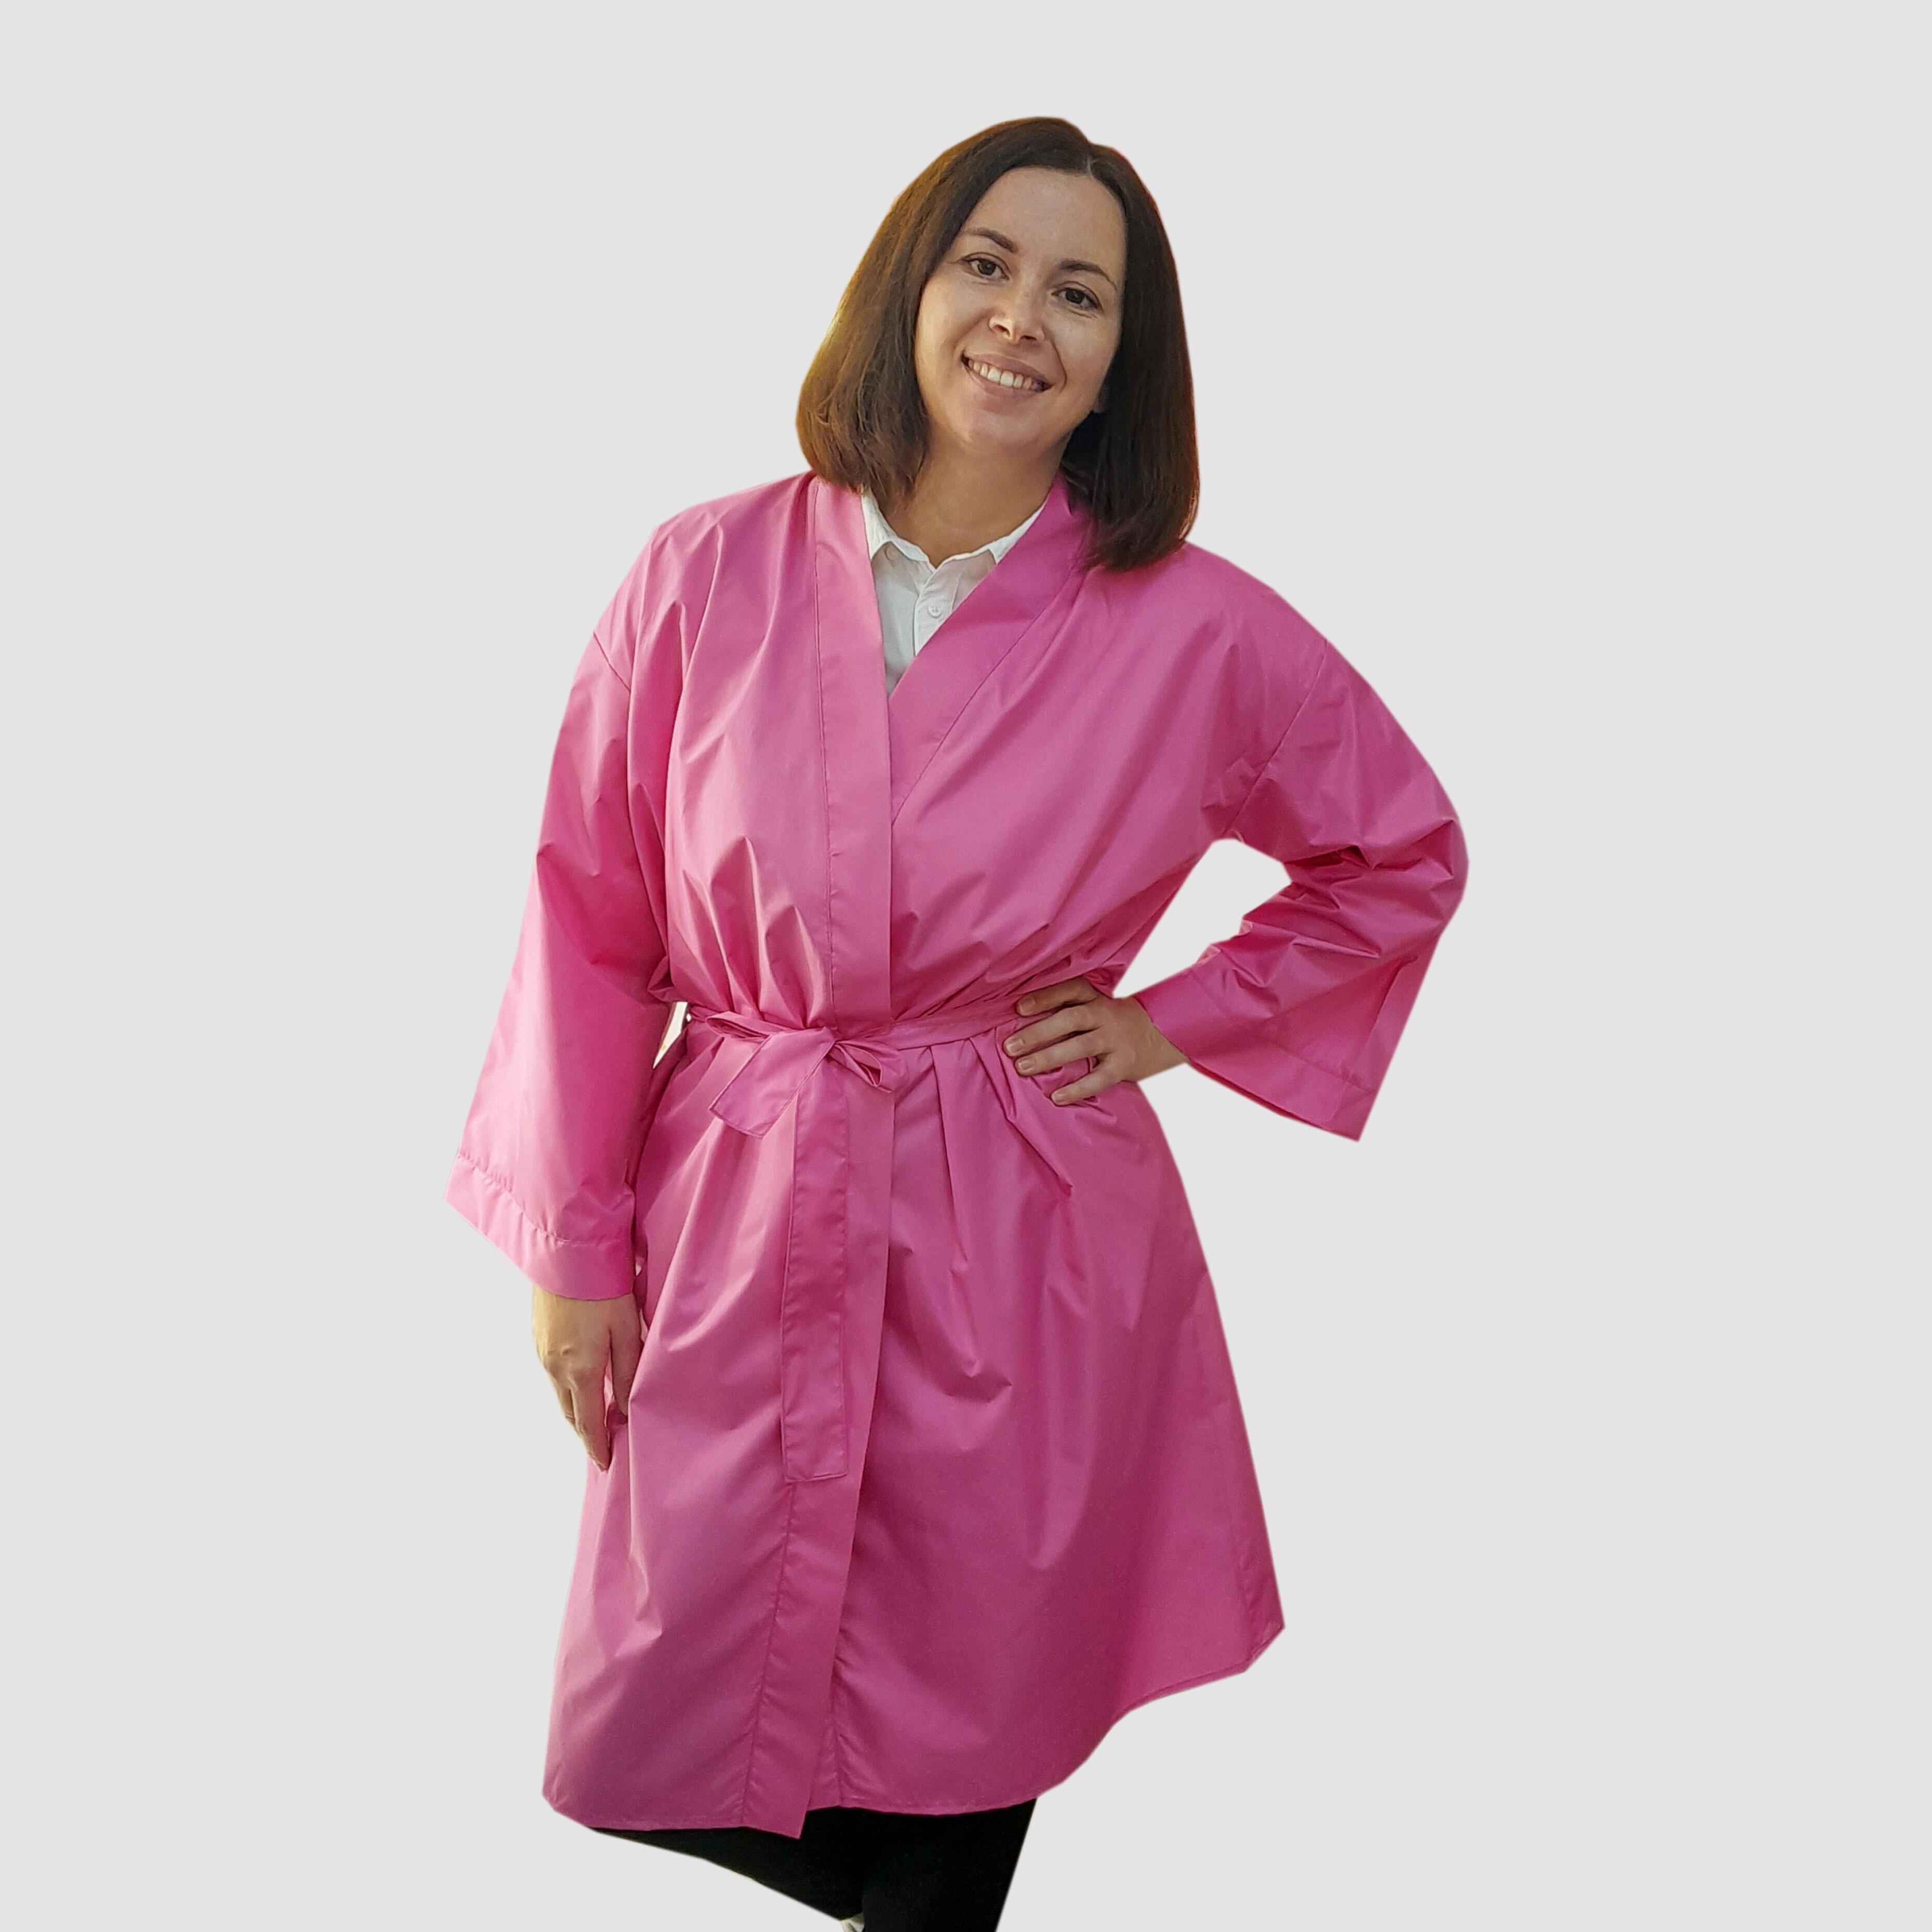 Nibano Salon kimono robe pink